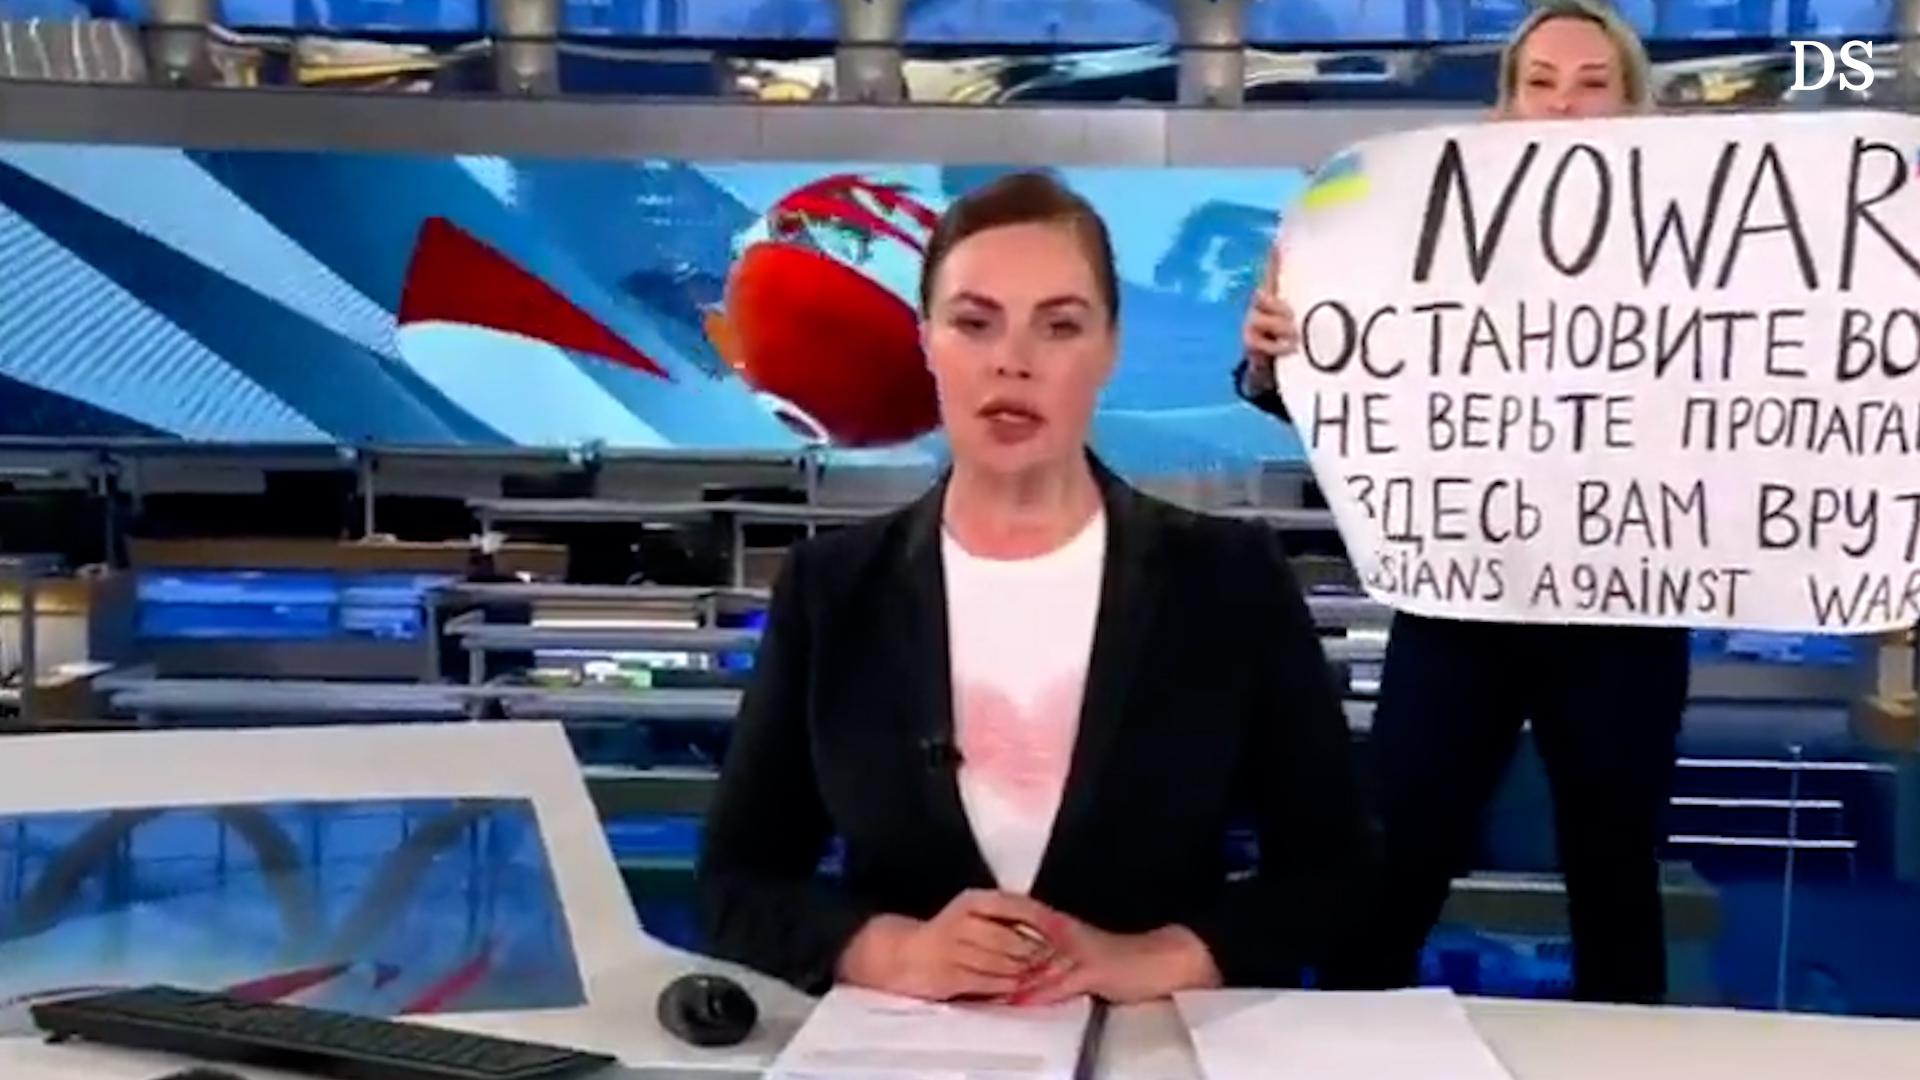 L’attivista contro la guerra prende d’assalto lo studio di notizie russo durante la trasmissione in diretta